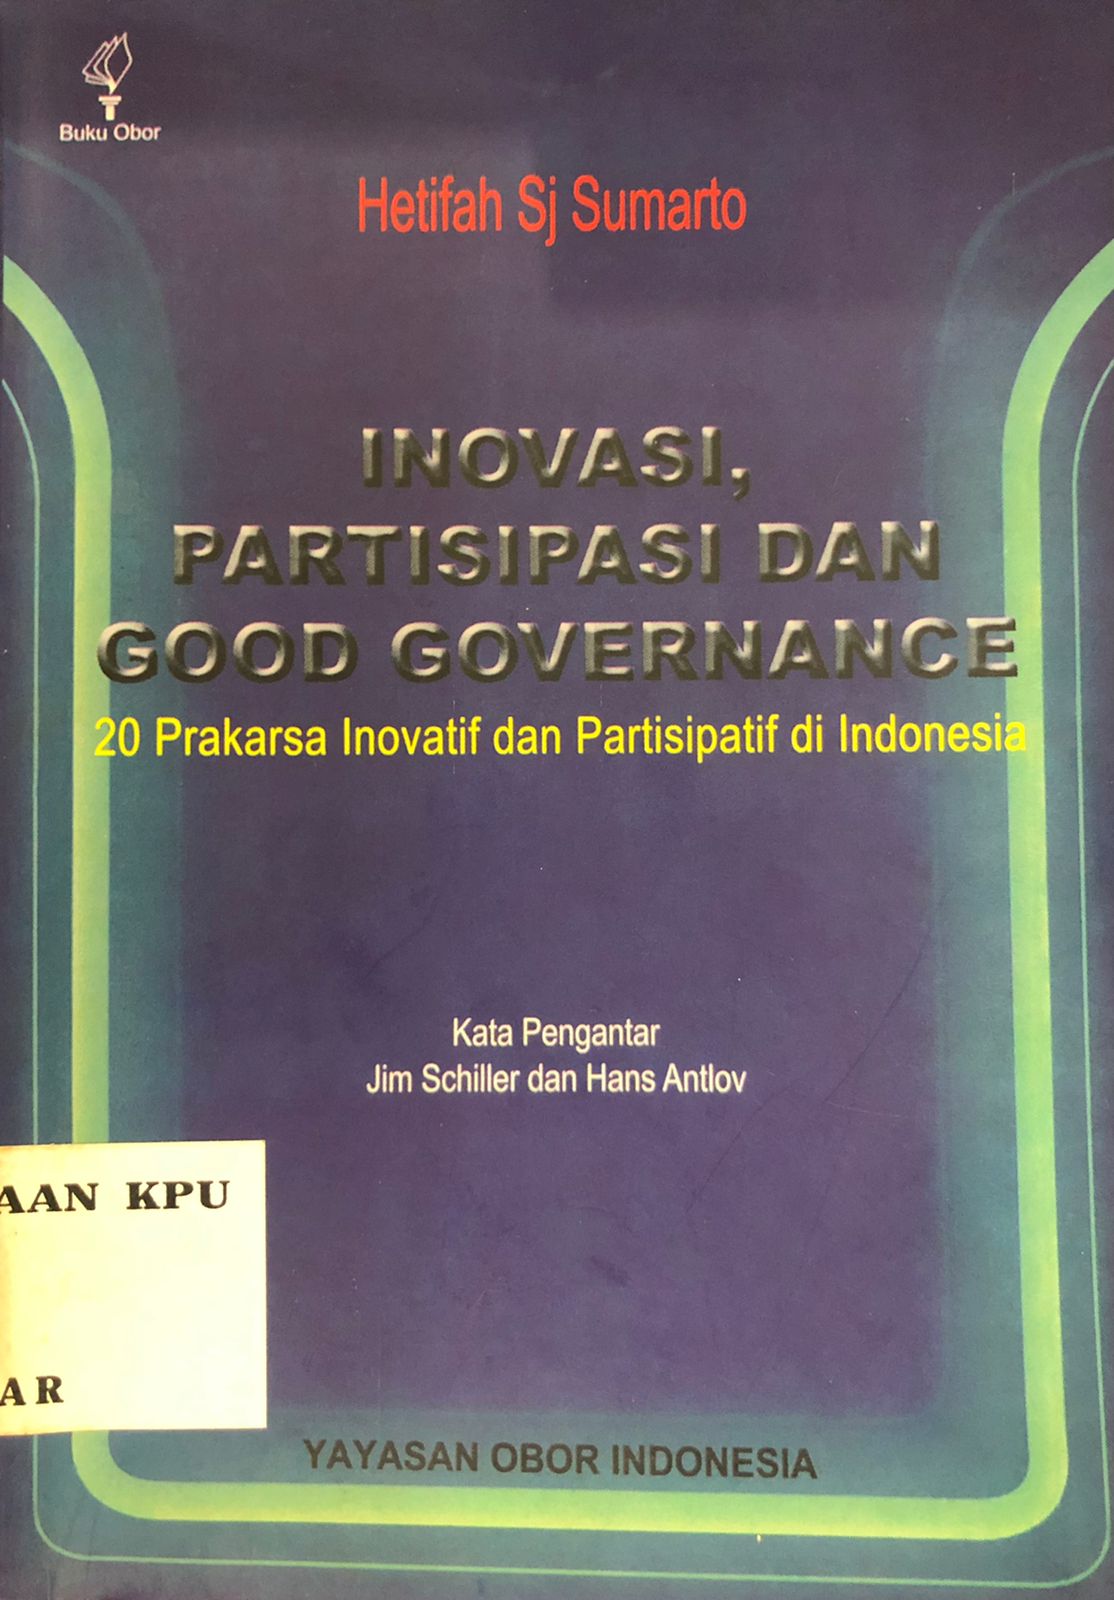 Inovasi, Partisipasi, dan Good Governance : 20 Prakarsa Inovatif dan Partisipatif di Indonesia